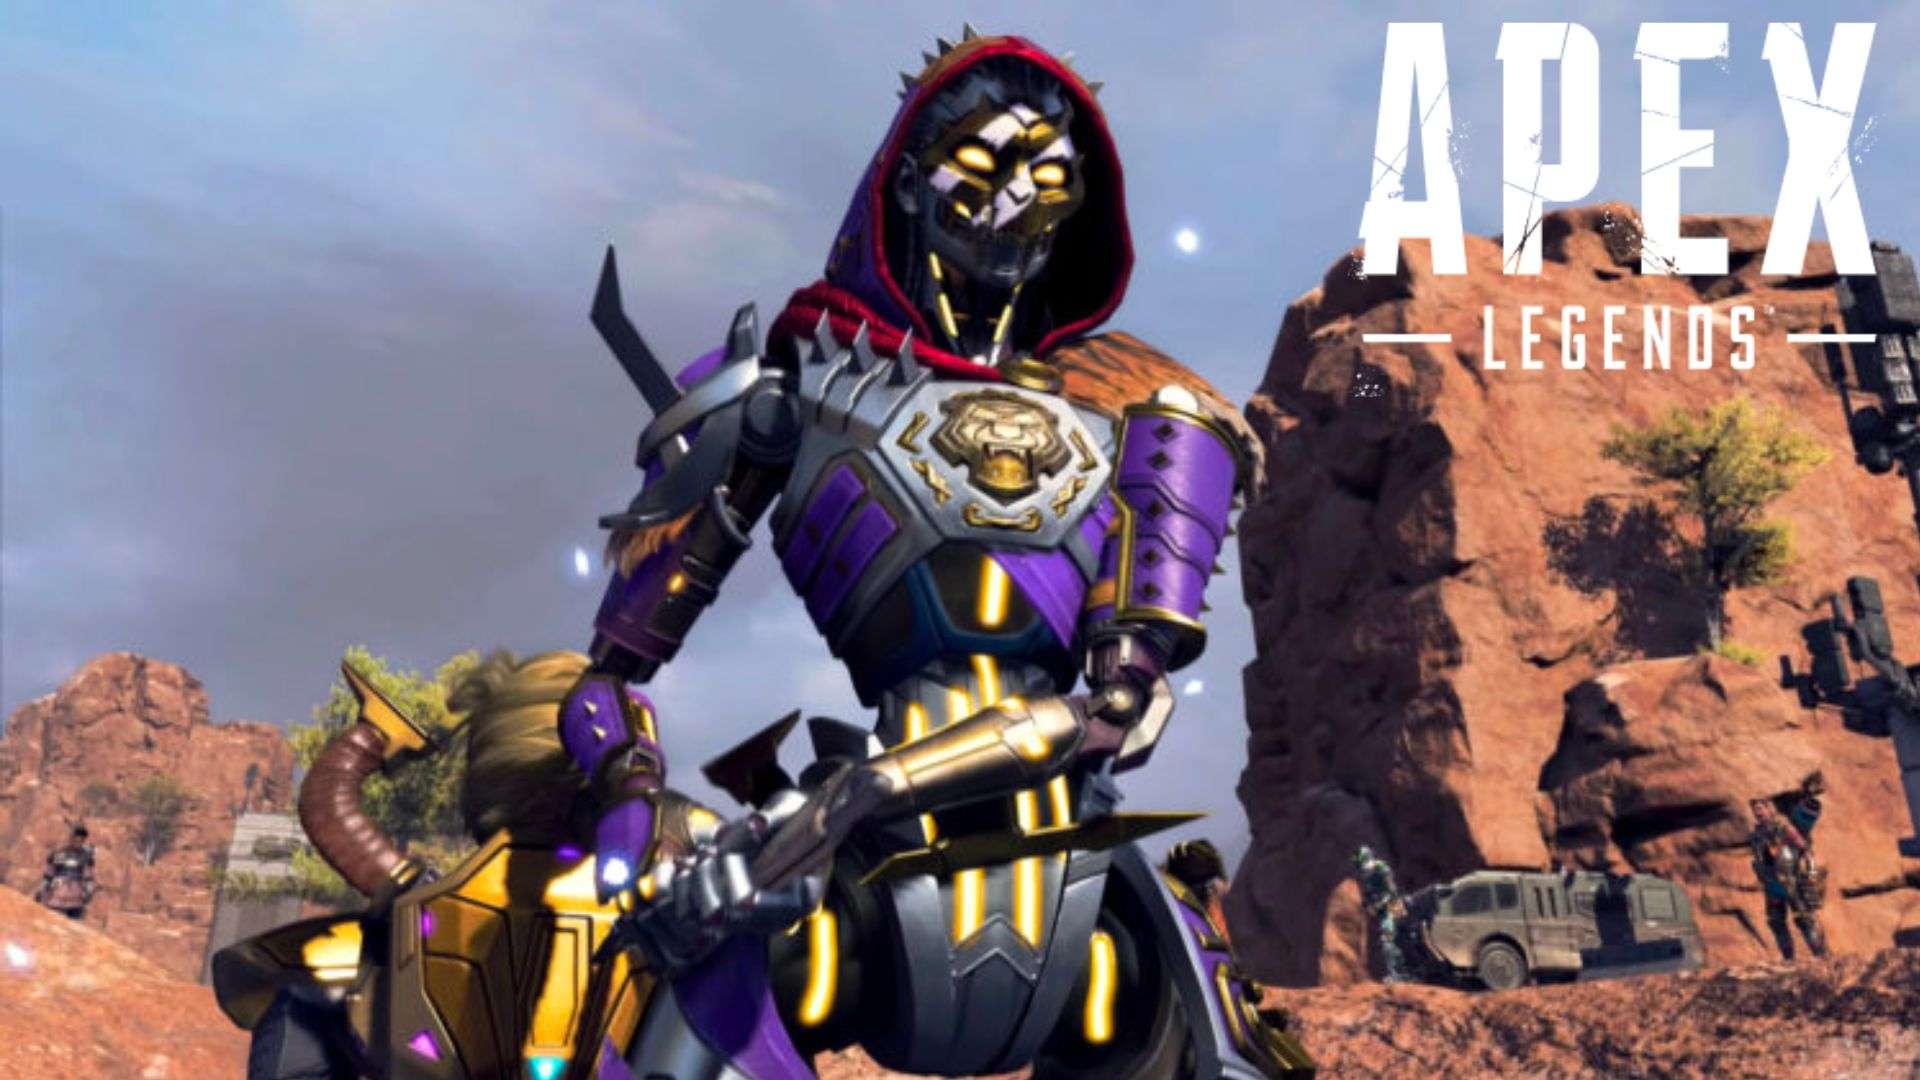 Ash in Apex Legends in purple skin